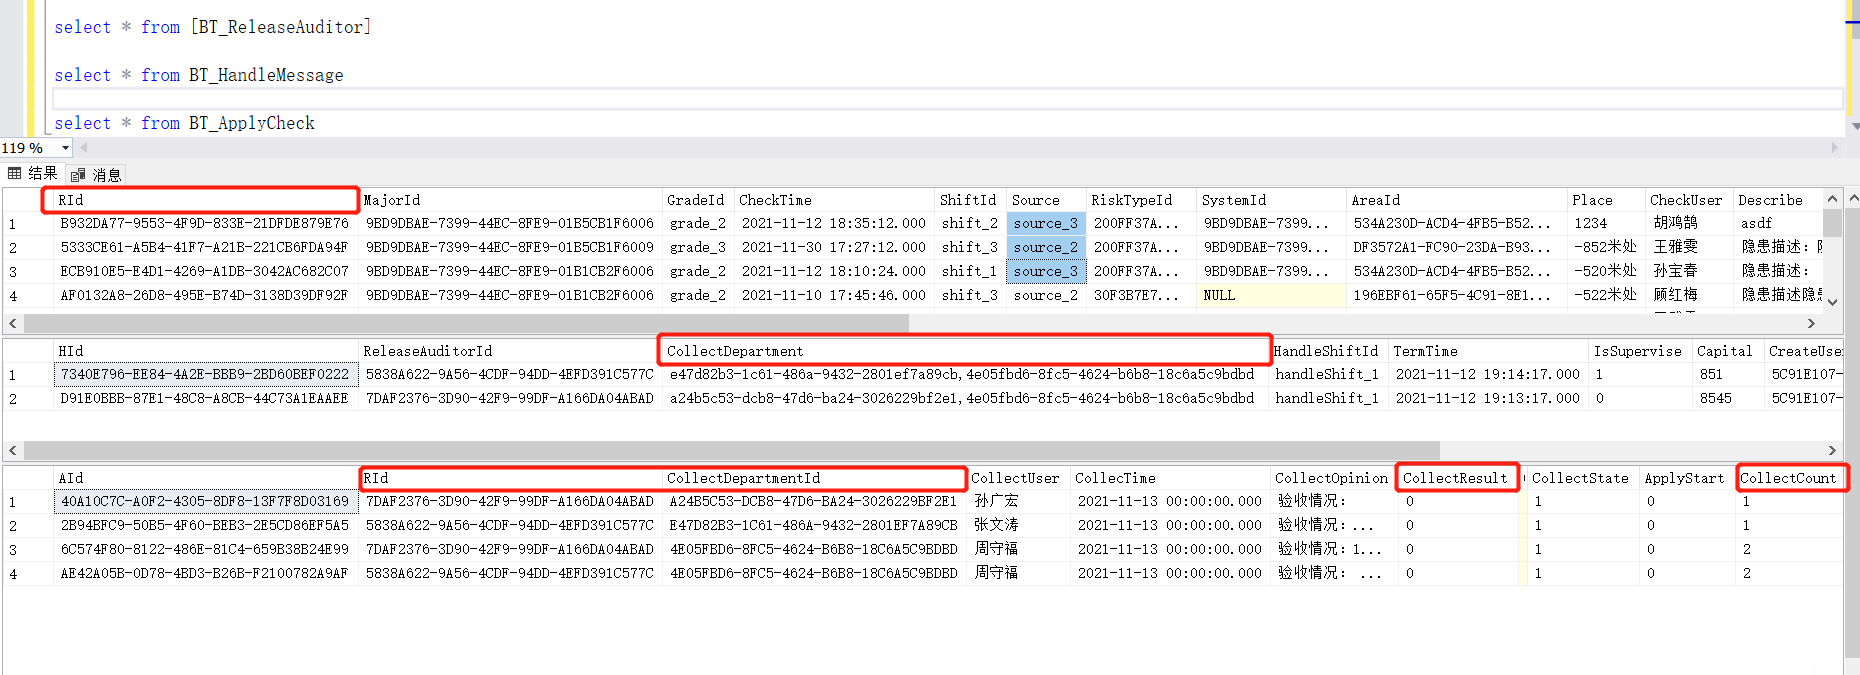 Sql Server一个表向另一个表添加多条数据，关联时查询出一条数据 